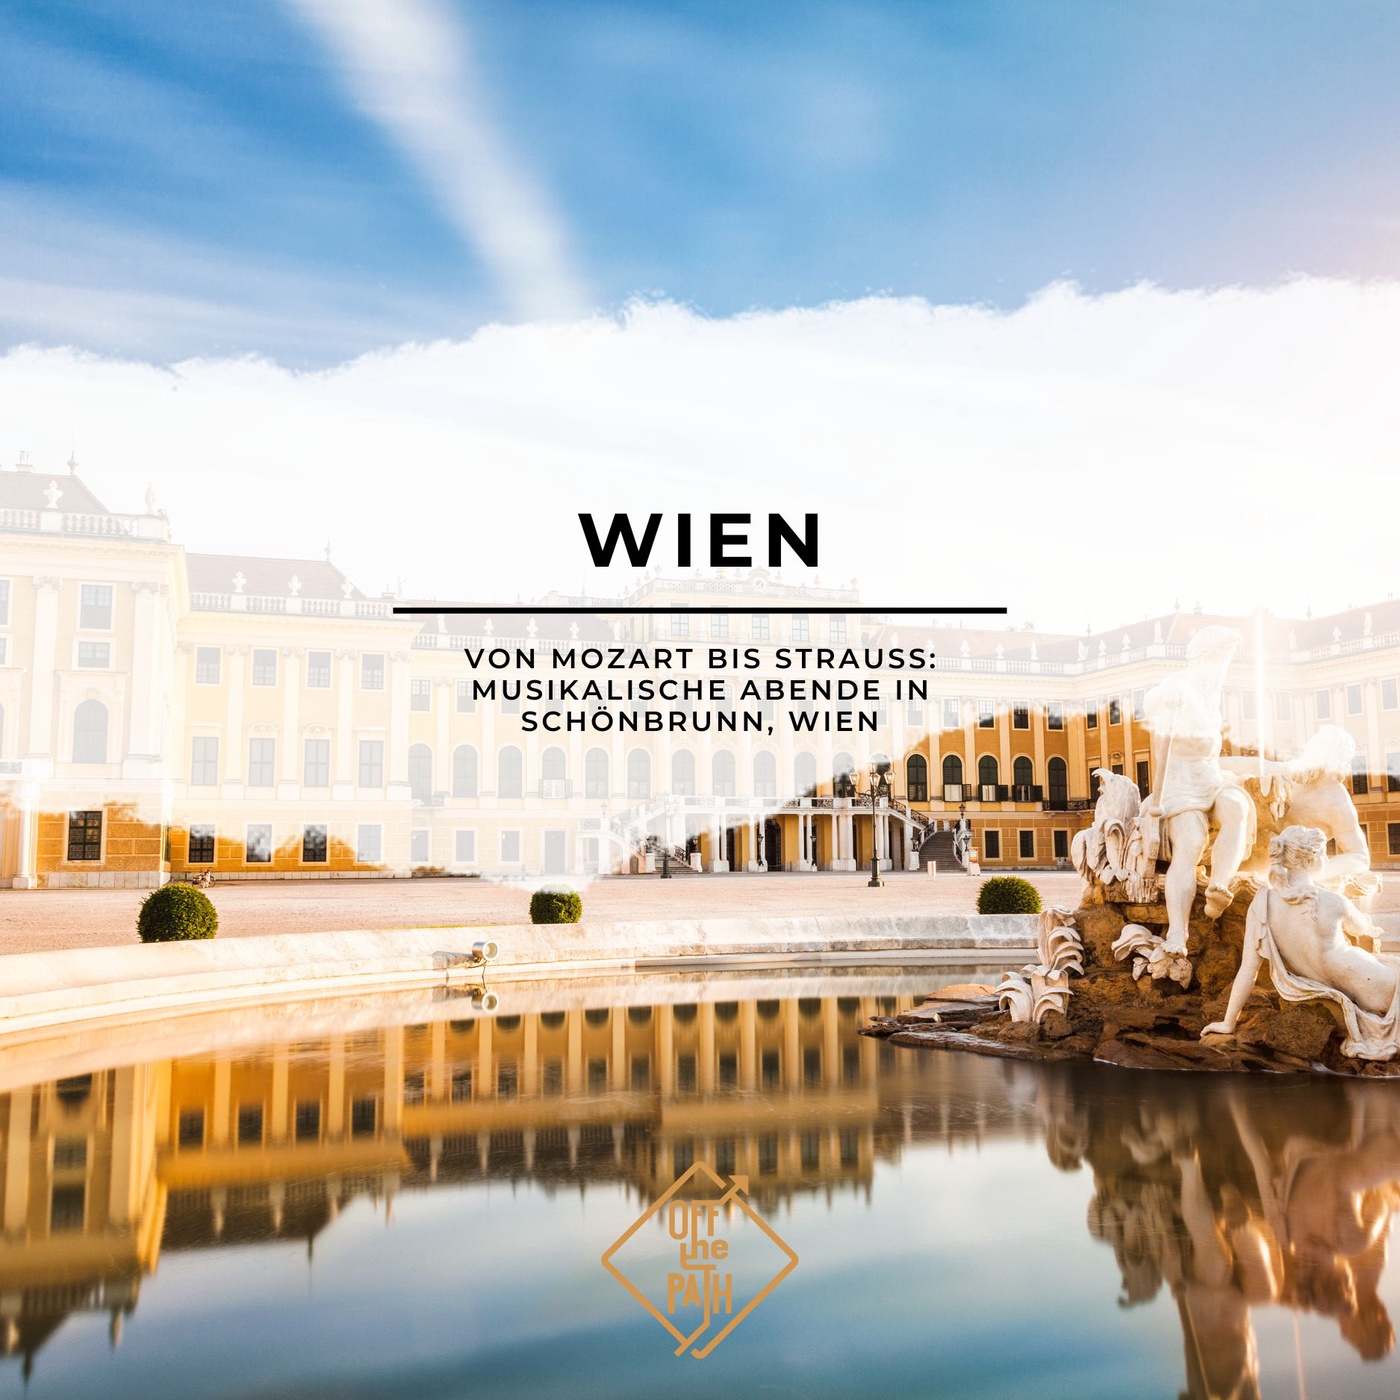 Von Mozart bis Strauss: Musikalische Abende in Schönbrunn, Wien